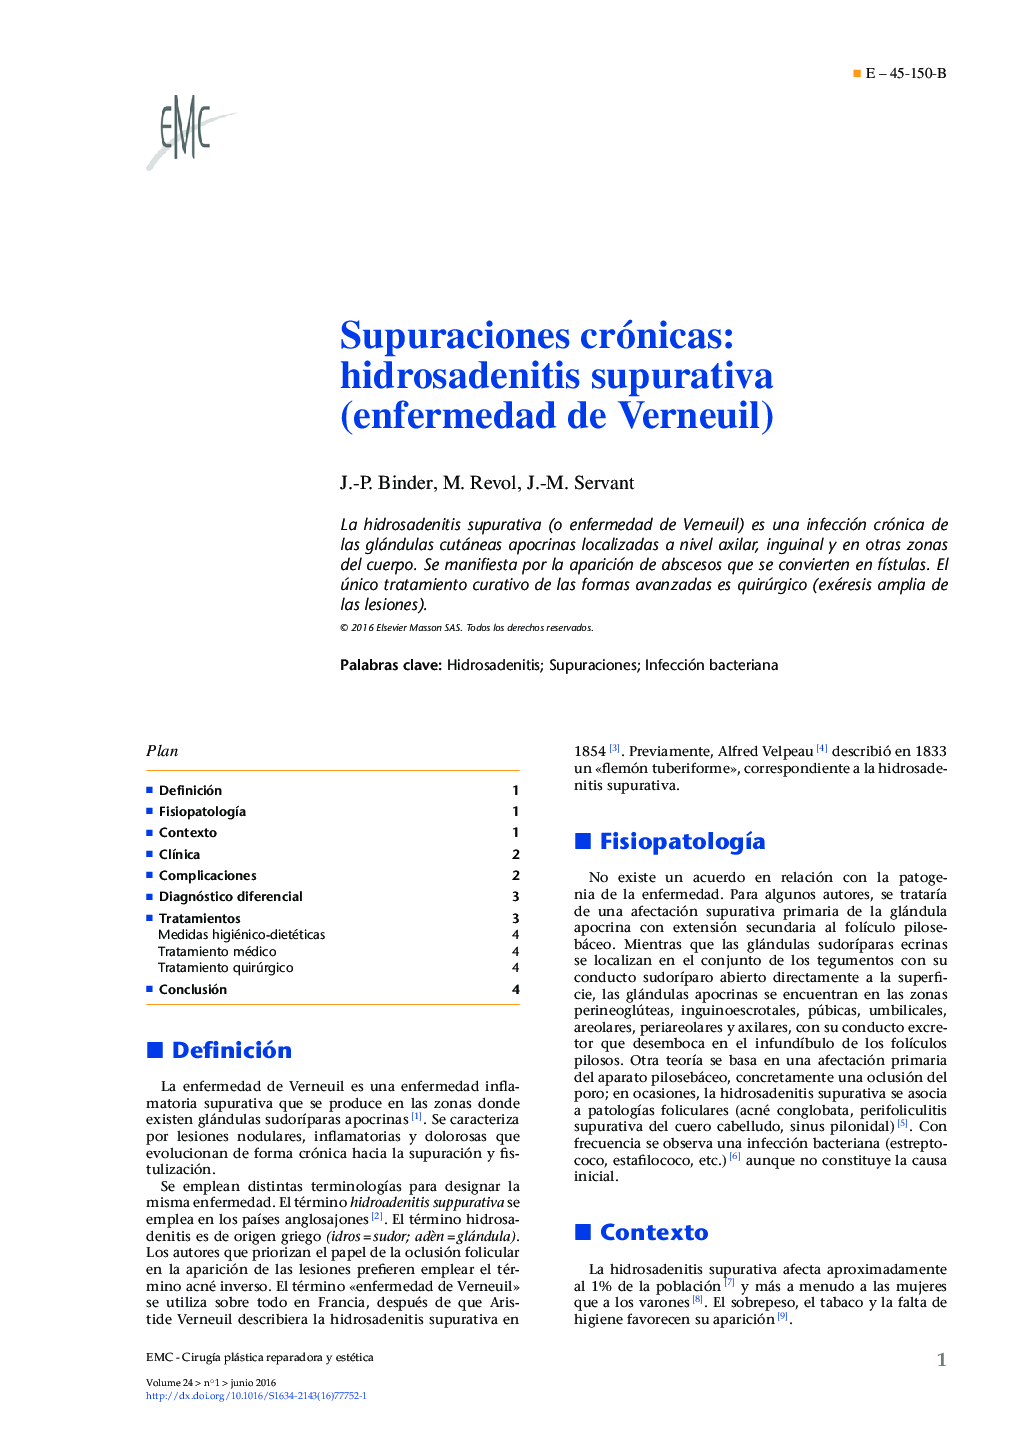 Supuraciones crónicas: hidrosadenitis supurativa (enfermedad de Verneuil)